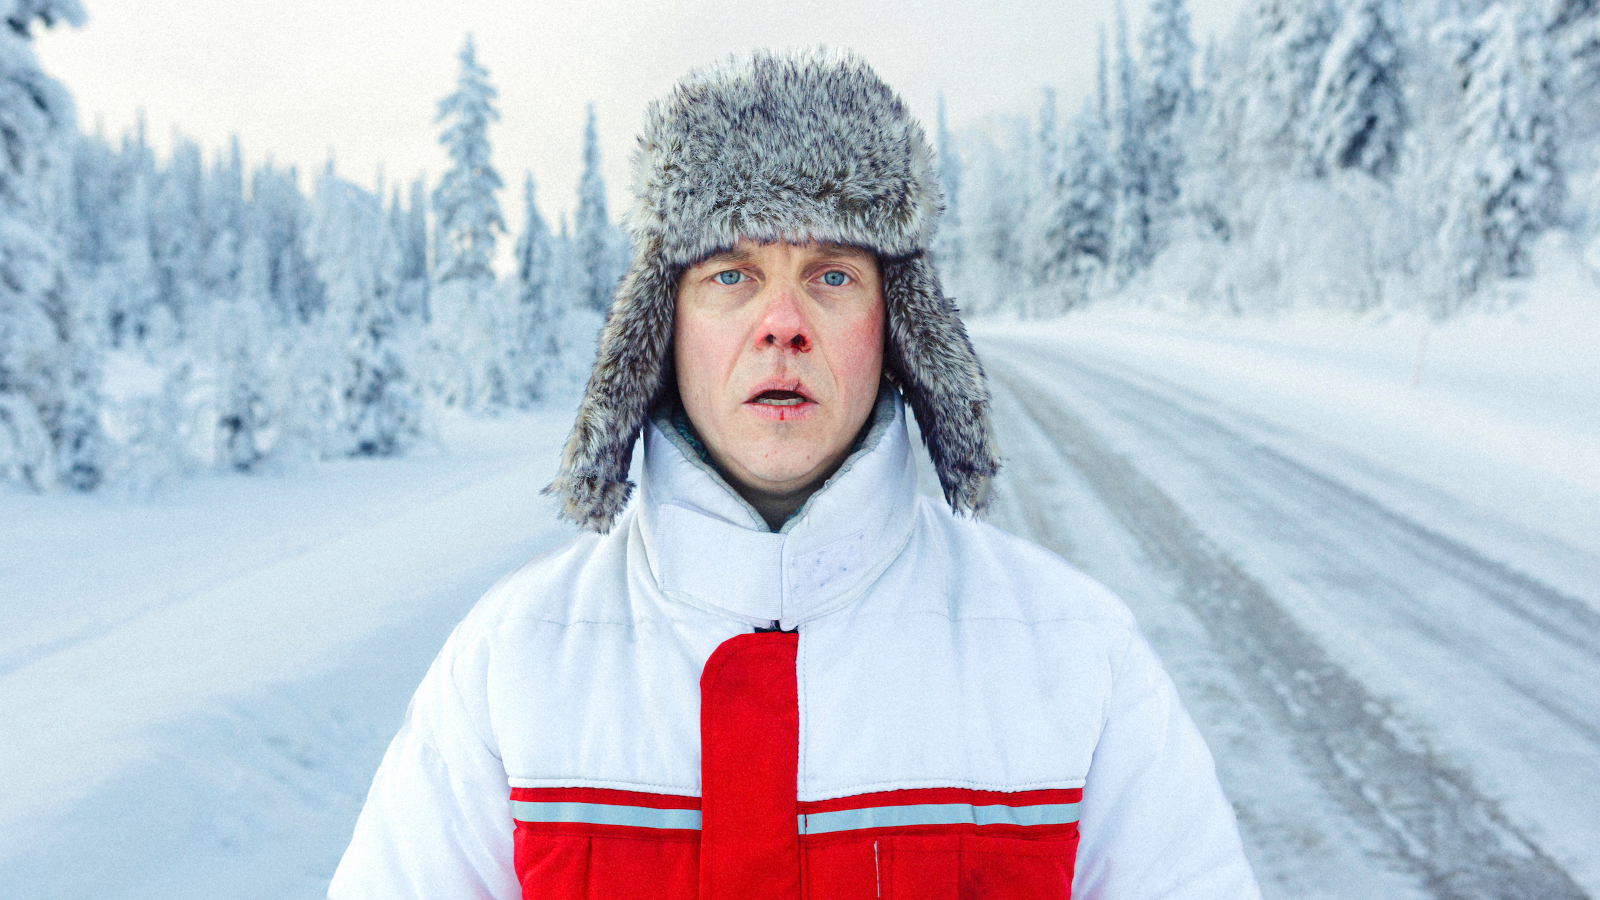 Kuvassa on Jarkko Lahti lumisessa maisemassa talvisella maantiellä.  Hänellä on valkoinen toppatakki, jossa on punainen ristikuvio. 